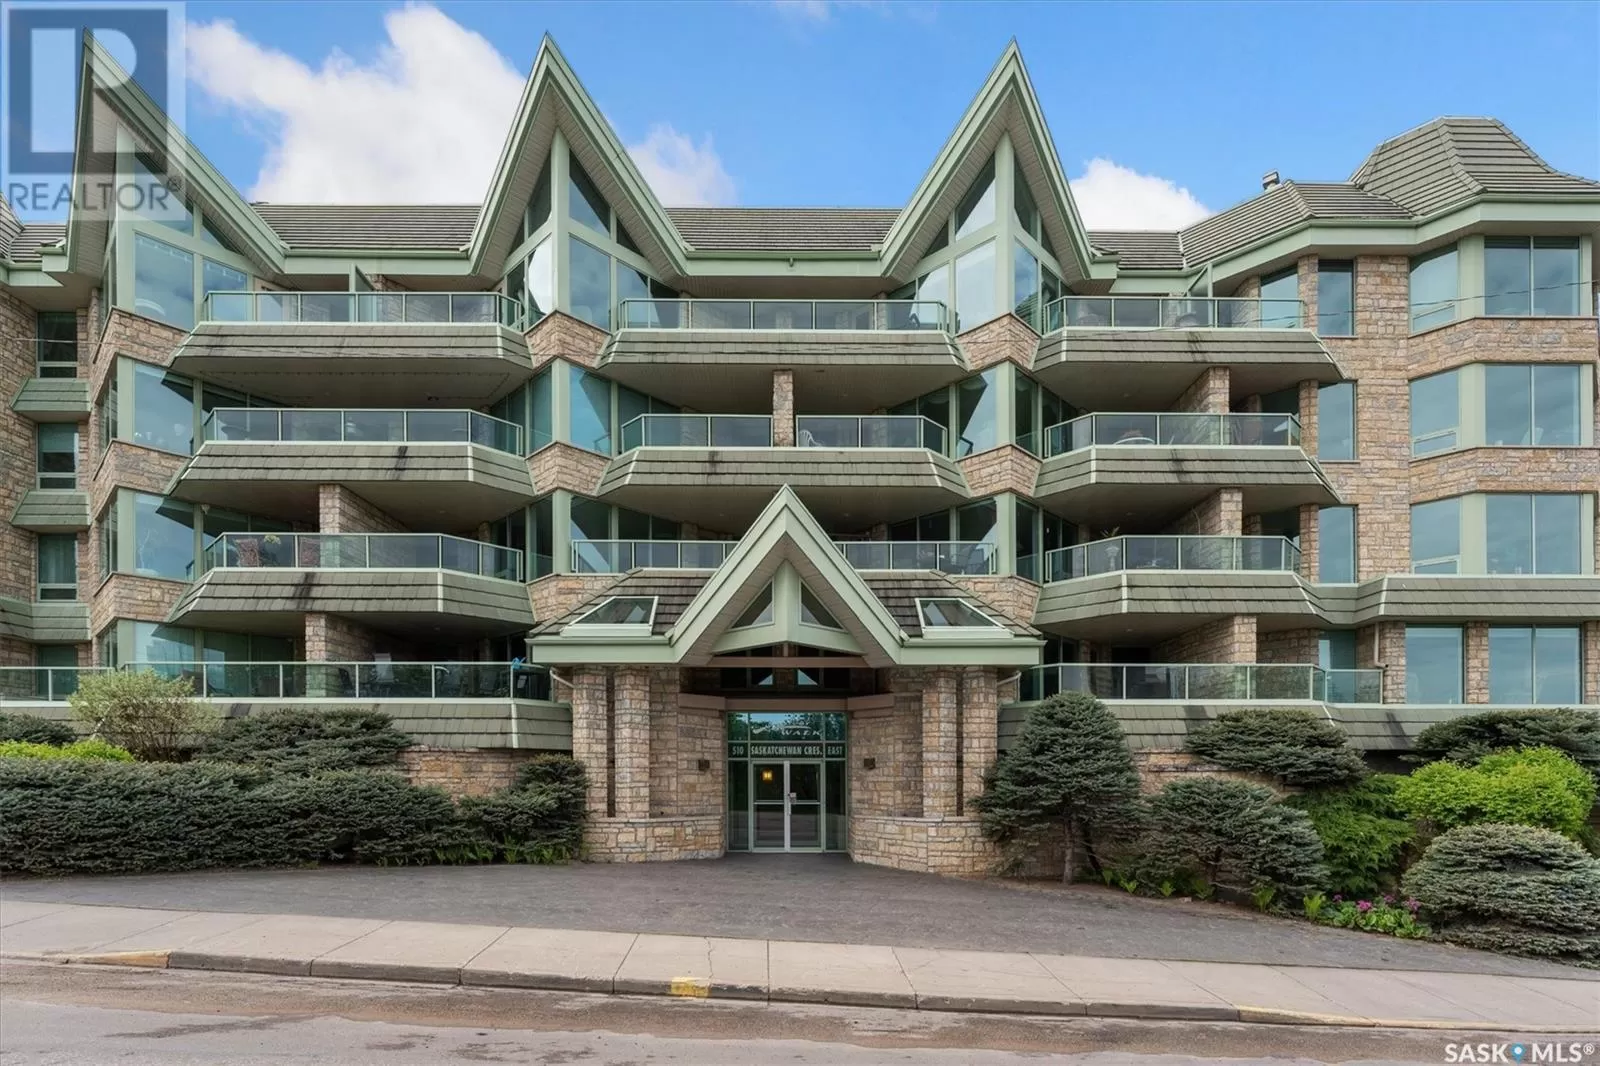 Apartment for rent: 101 510 Saskatchewan Crescent, Saskatoon, Saskatchewan S7N 4P9